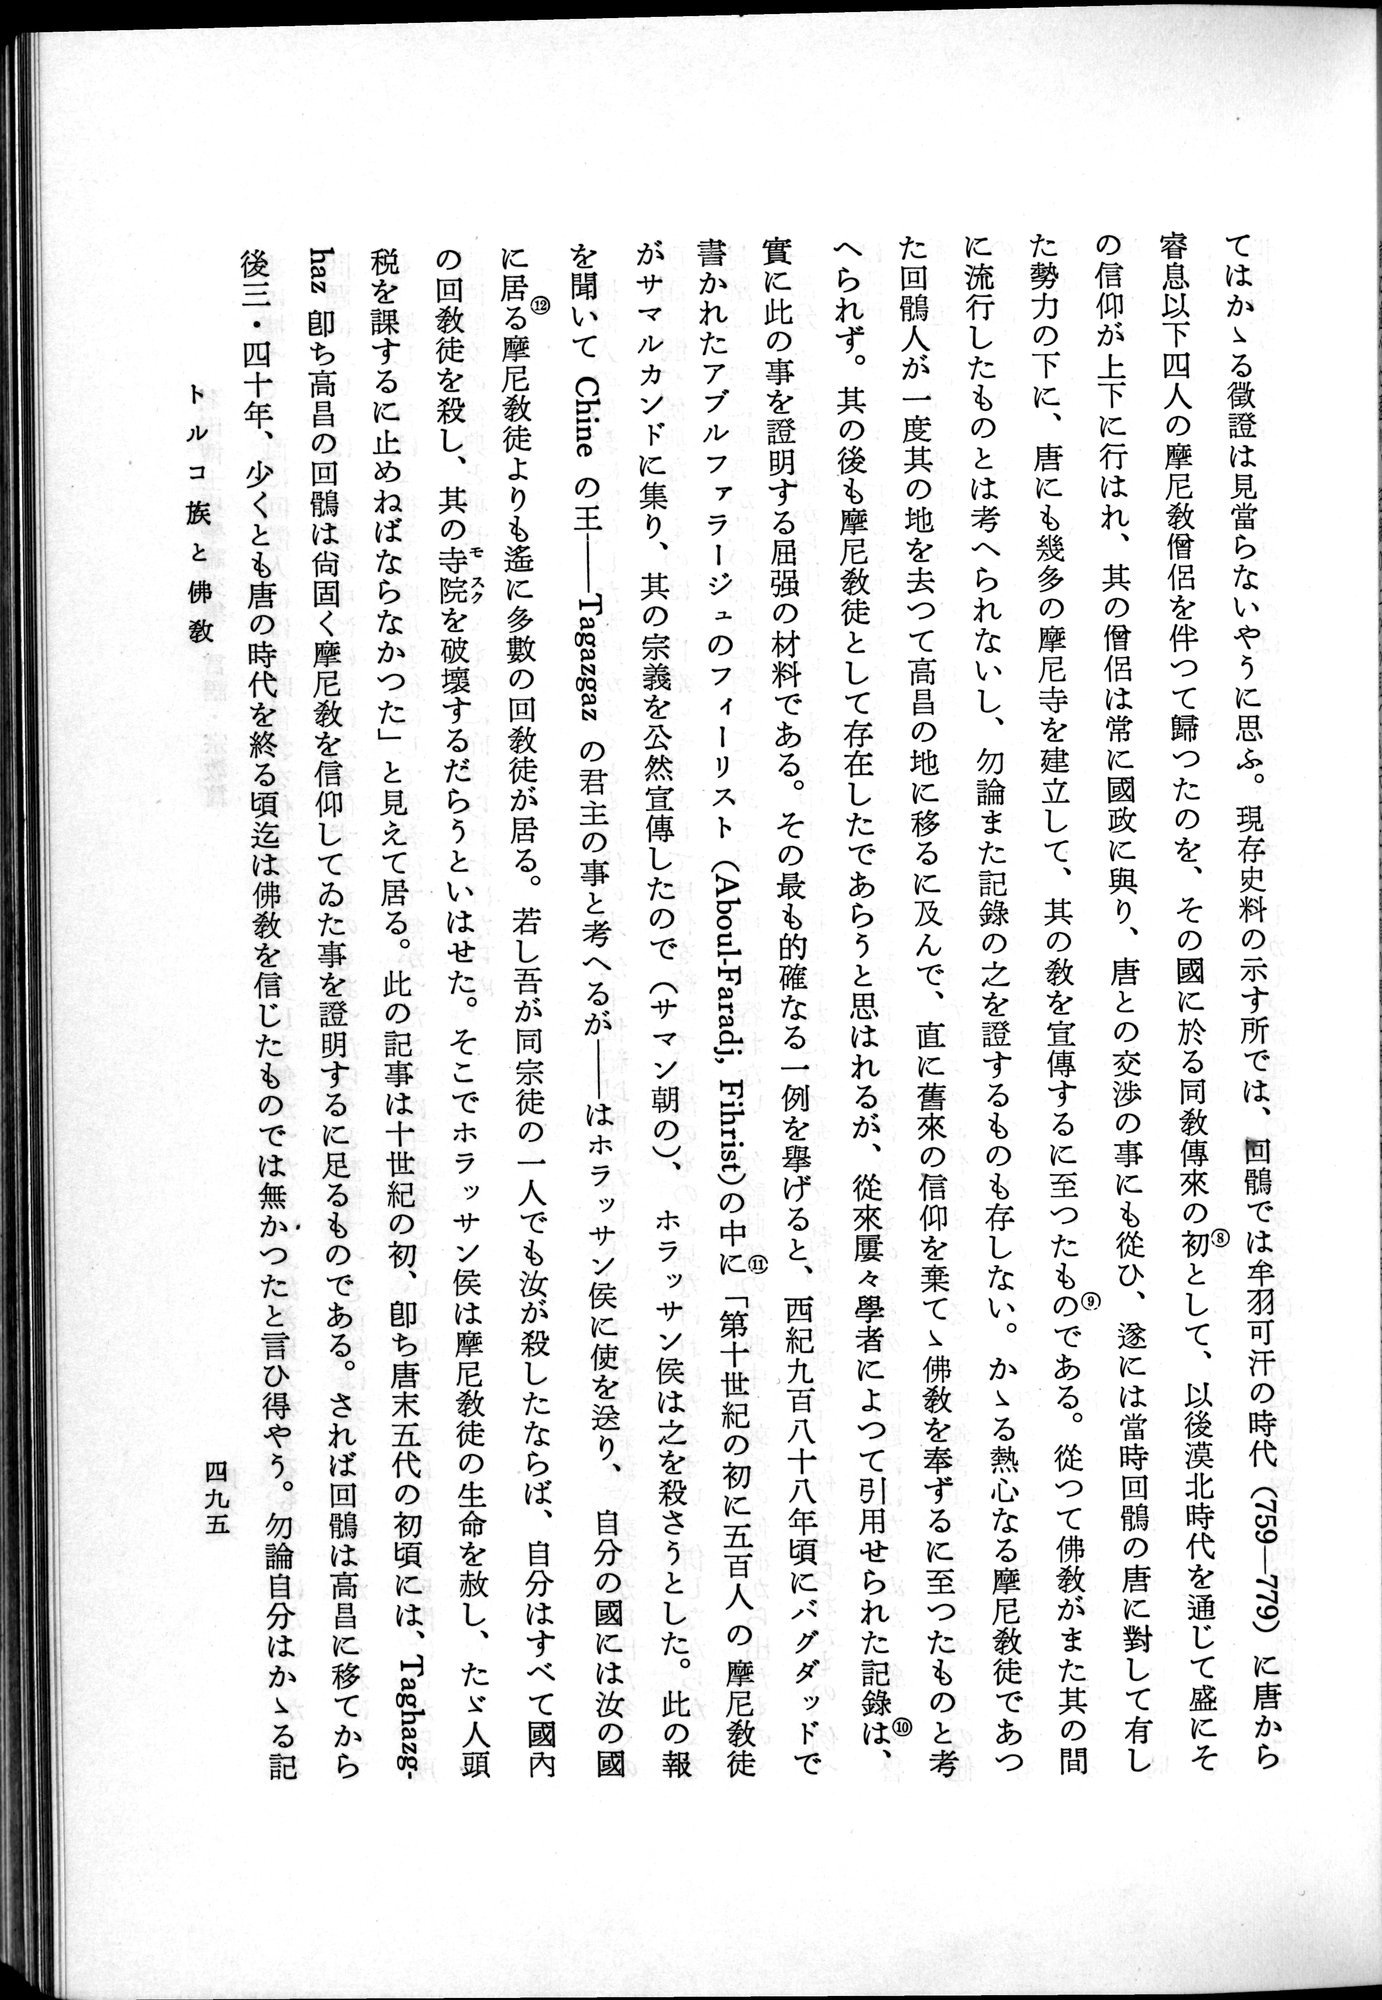 羽田博士史学論文集 : vol.2 / Page 557 (Grayscale High Resolution Image)